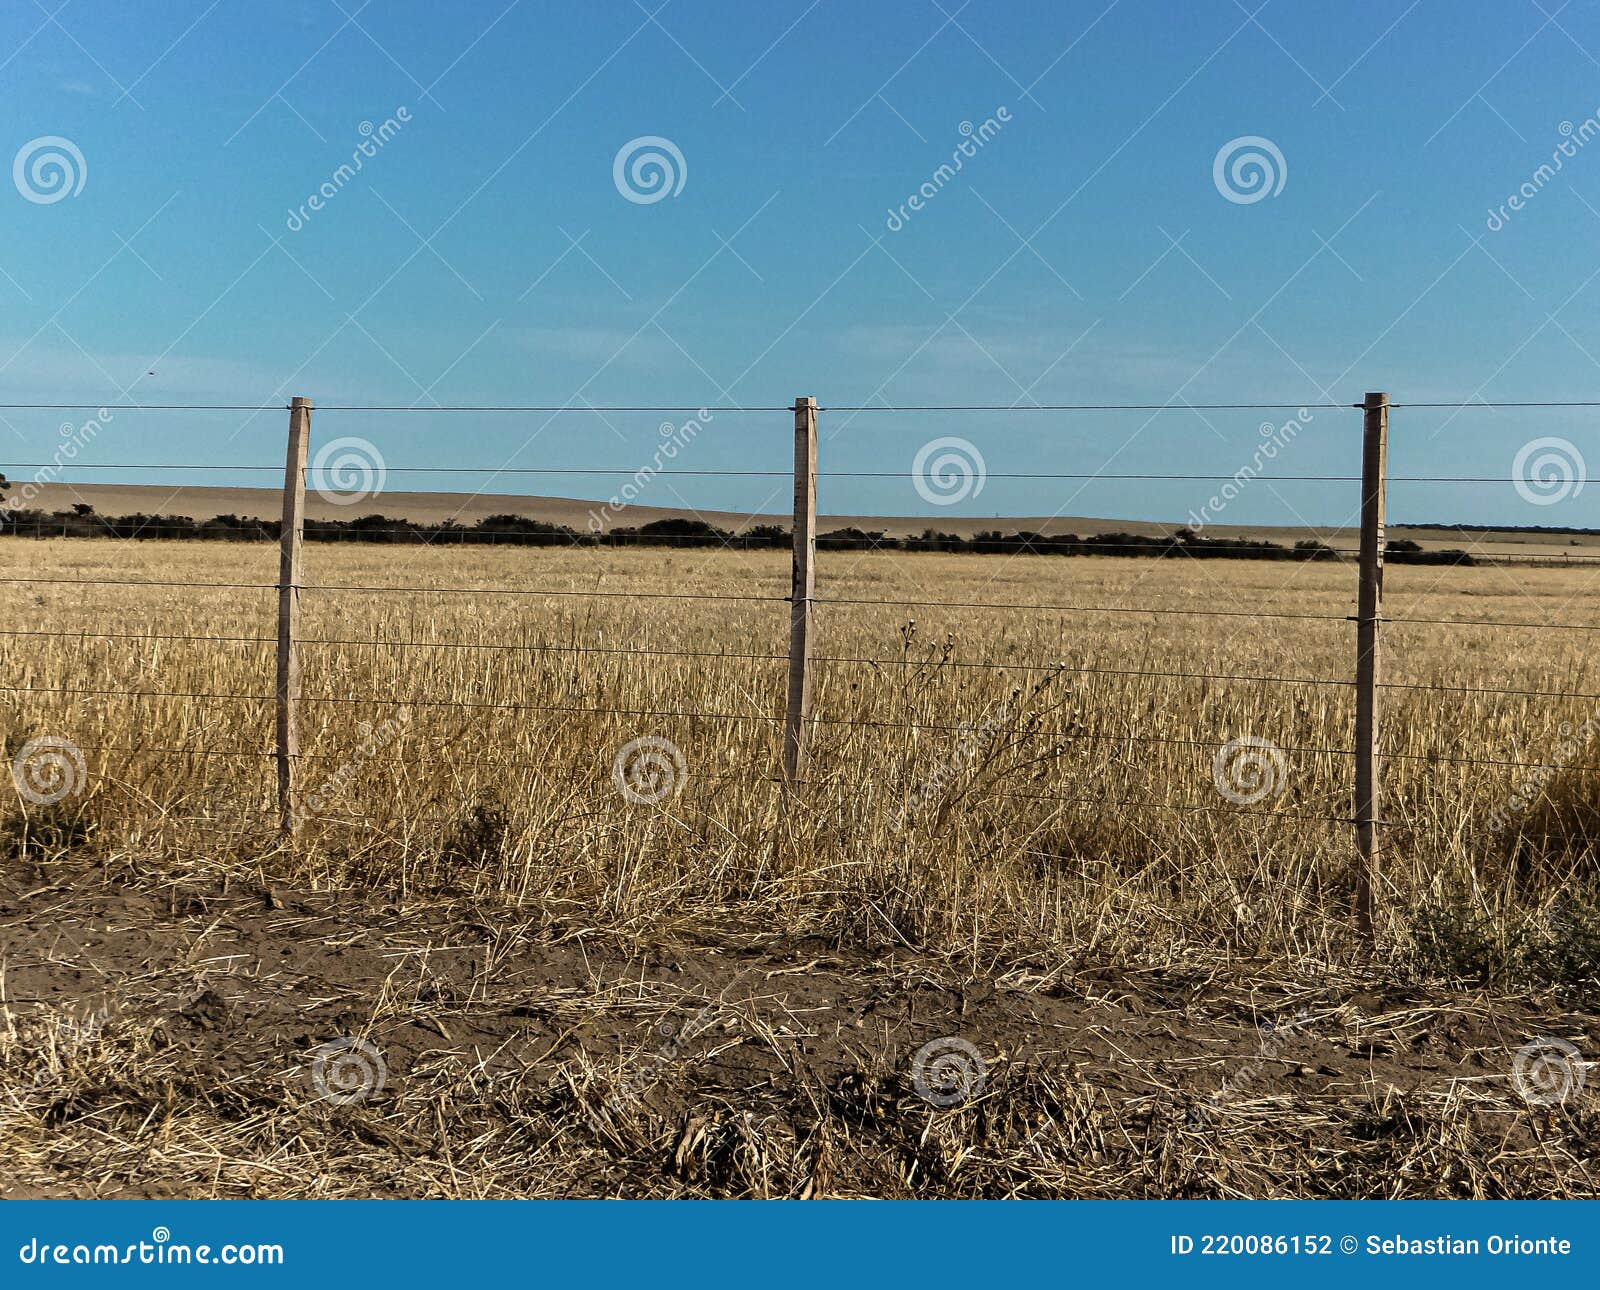 paisaje rural campo con rastrojos de trigo